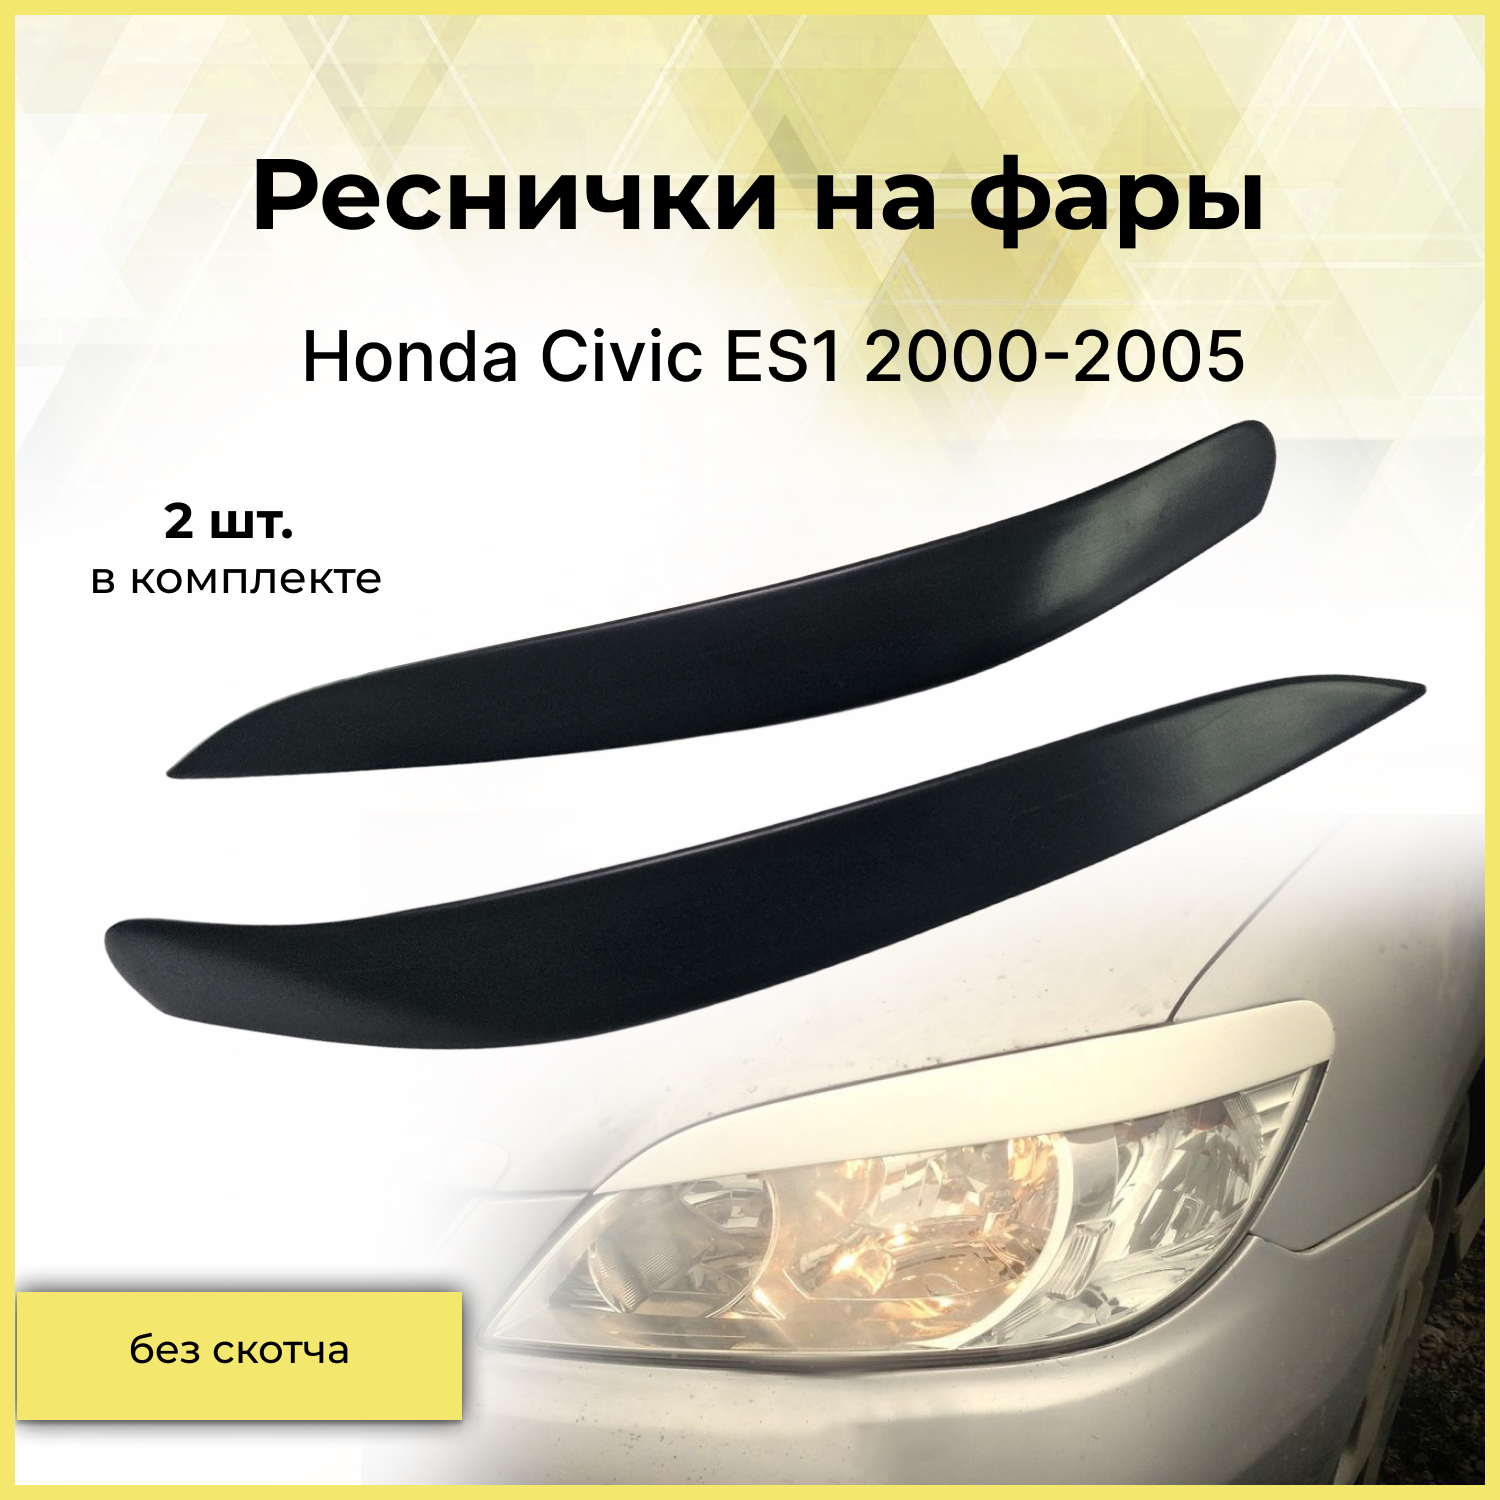 Реснички на фары / Накладки на передние фары для Honda Civic ES1 (Хонда Цивик) 2000-2005